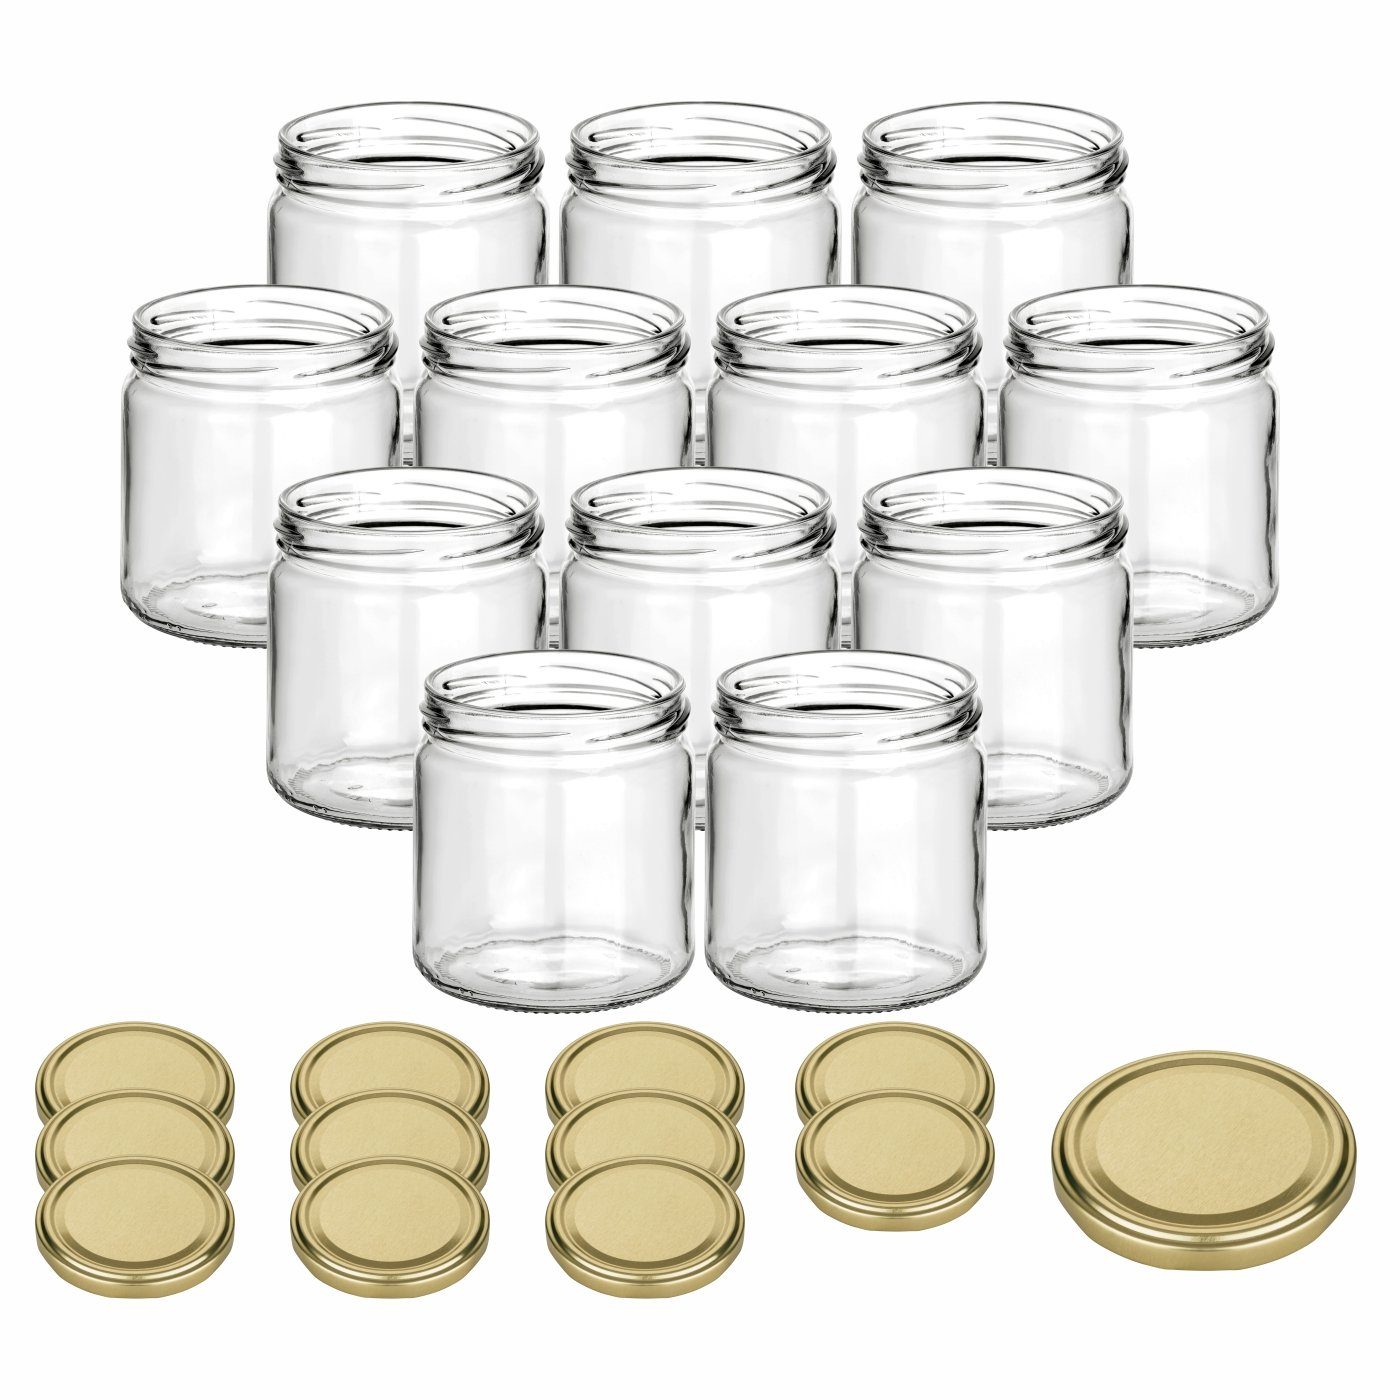 gouveo Honigglas 500g mit Schraub-Deckel - Leere Vorratsgläser 405 ml für Honig, Metall TO82 goldfarben, (12-tlg)